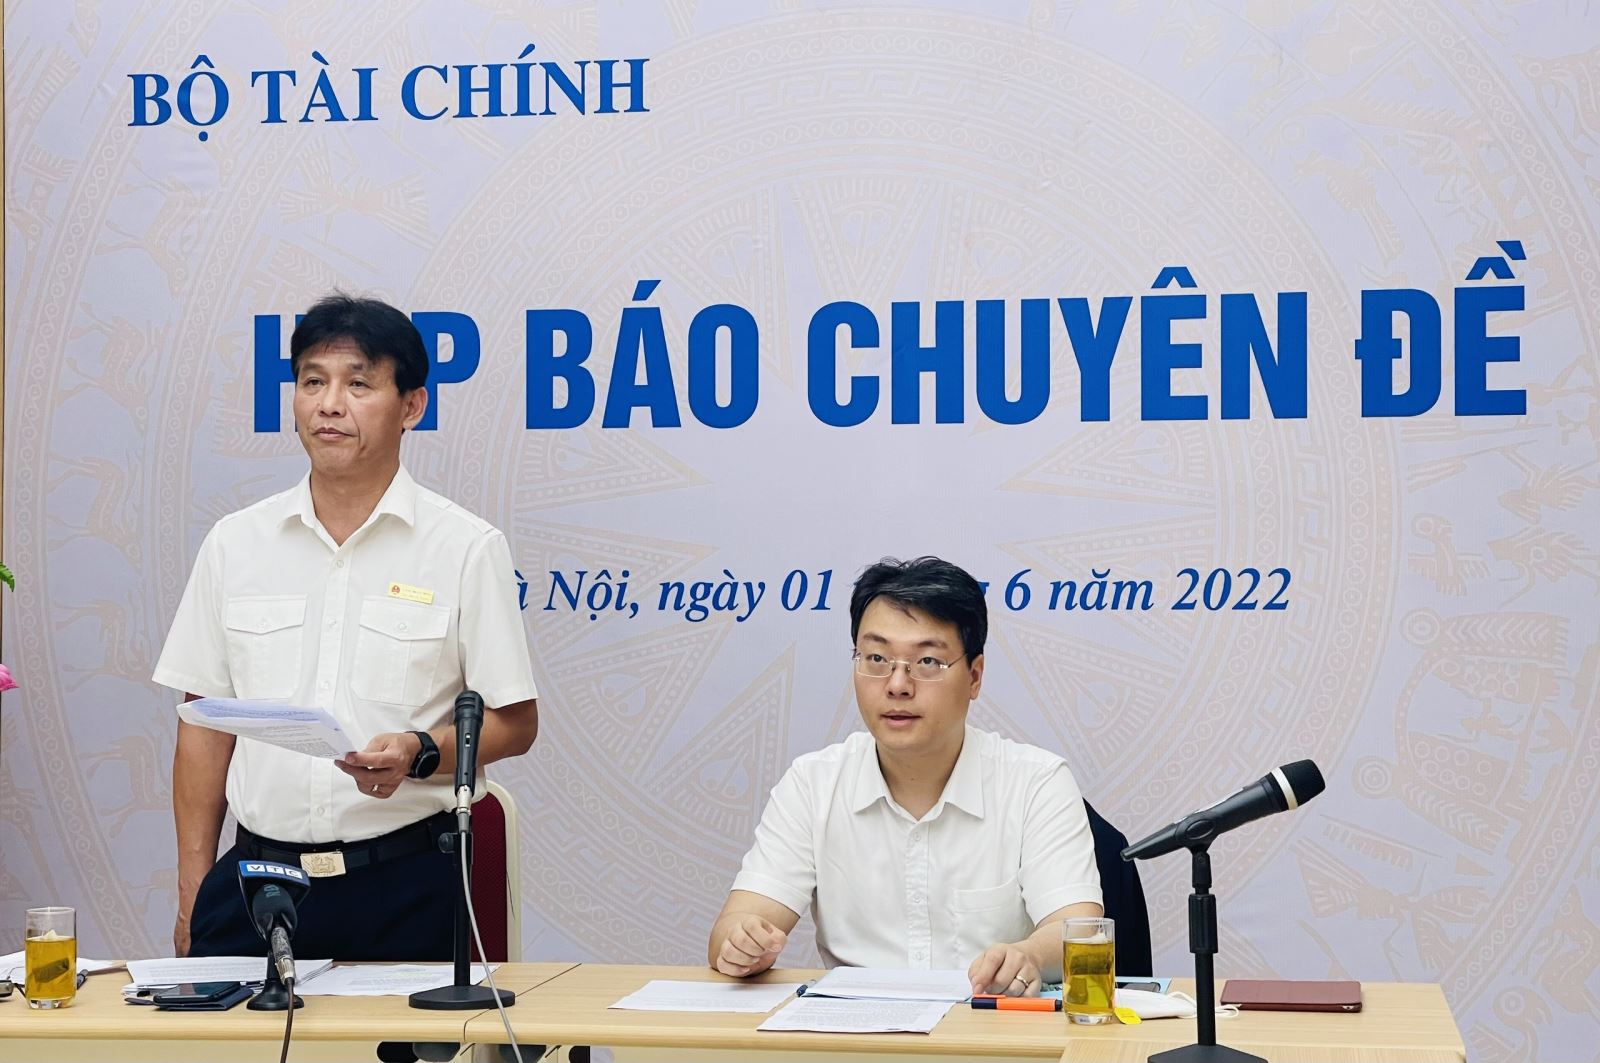 Phó Tổng cục Trưởng Tổng cục Thuế Đặng Ngọc Minh phát biểu tại cuộc họp báo.